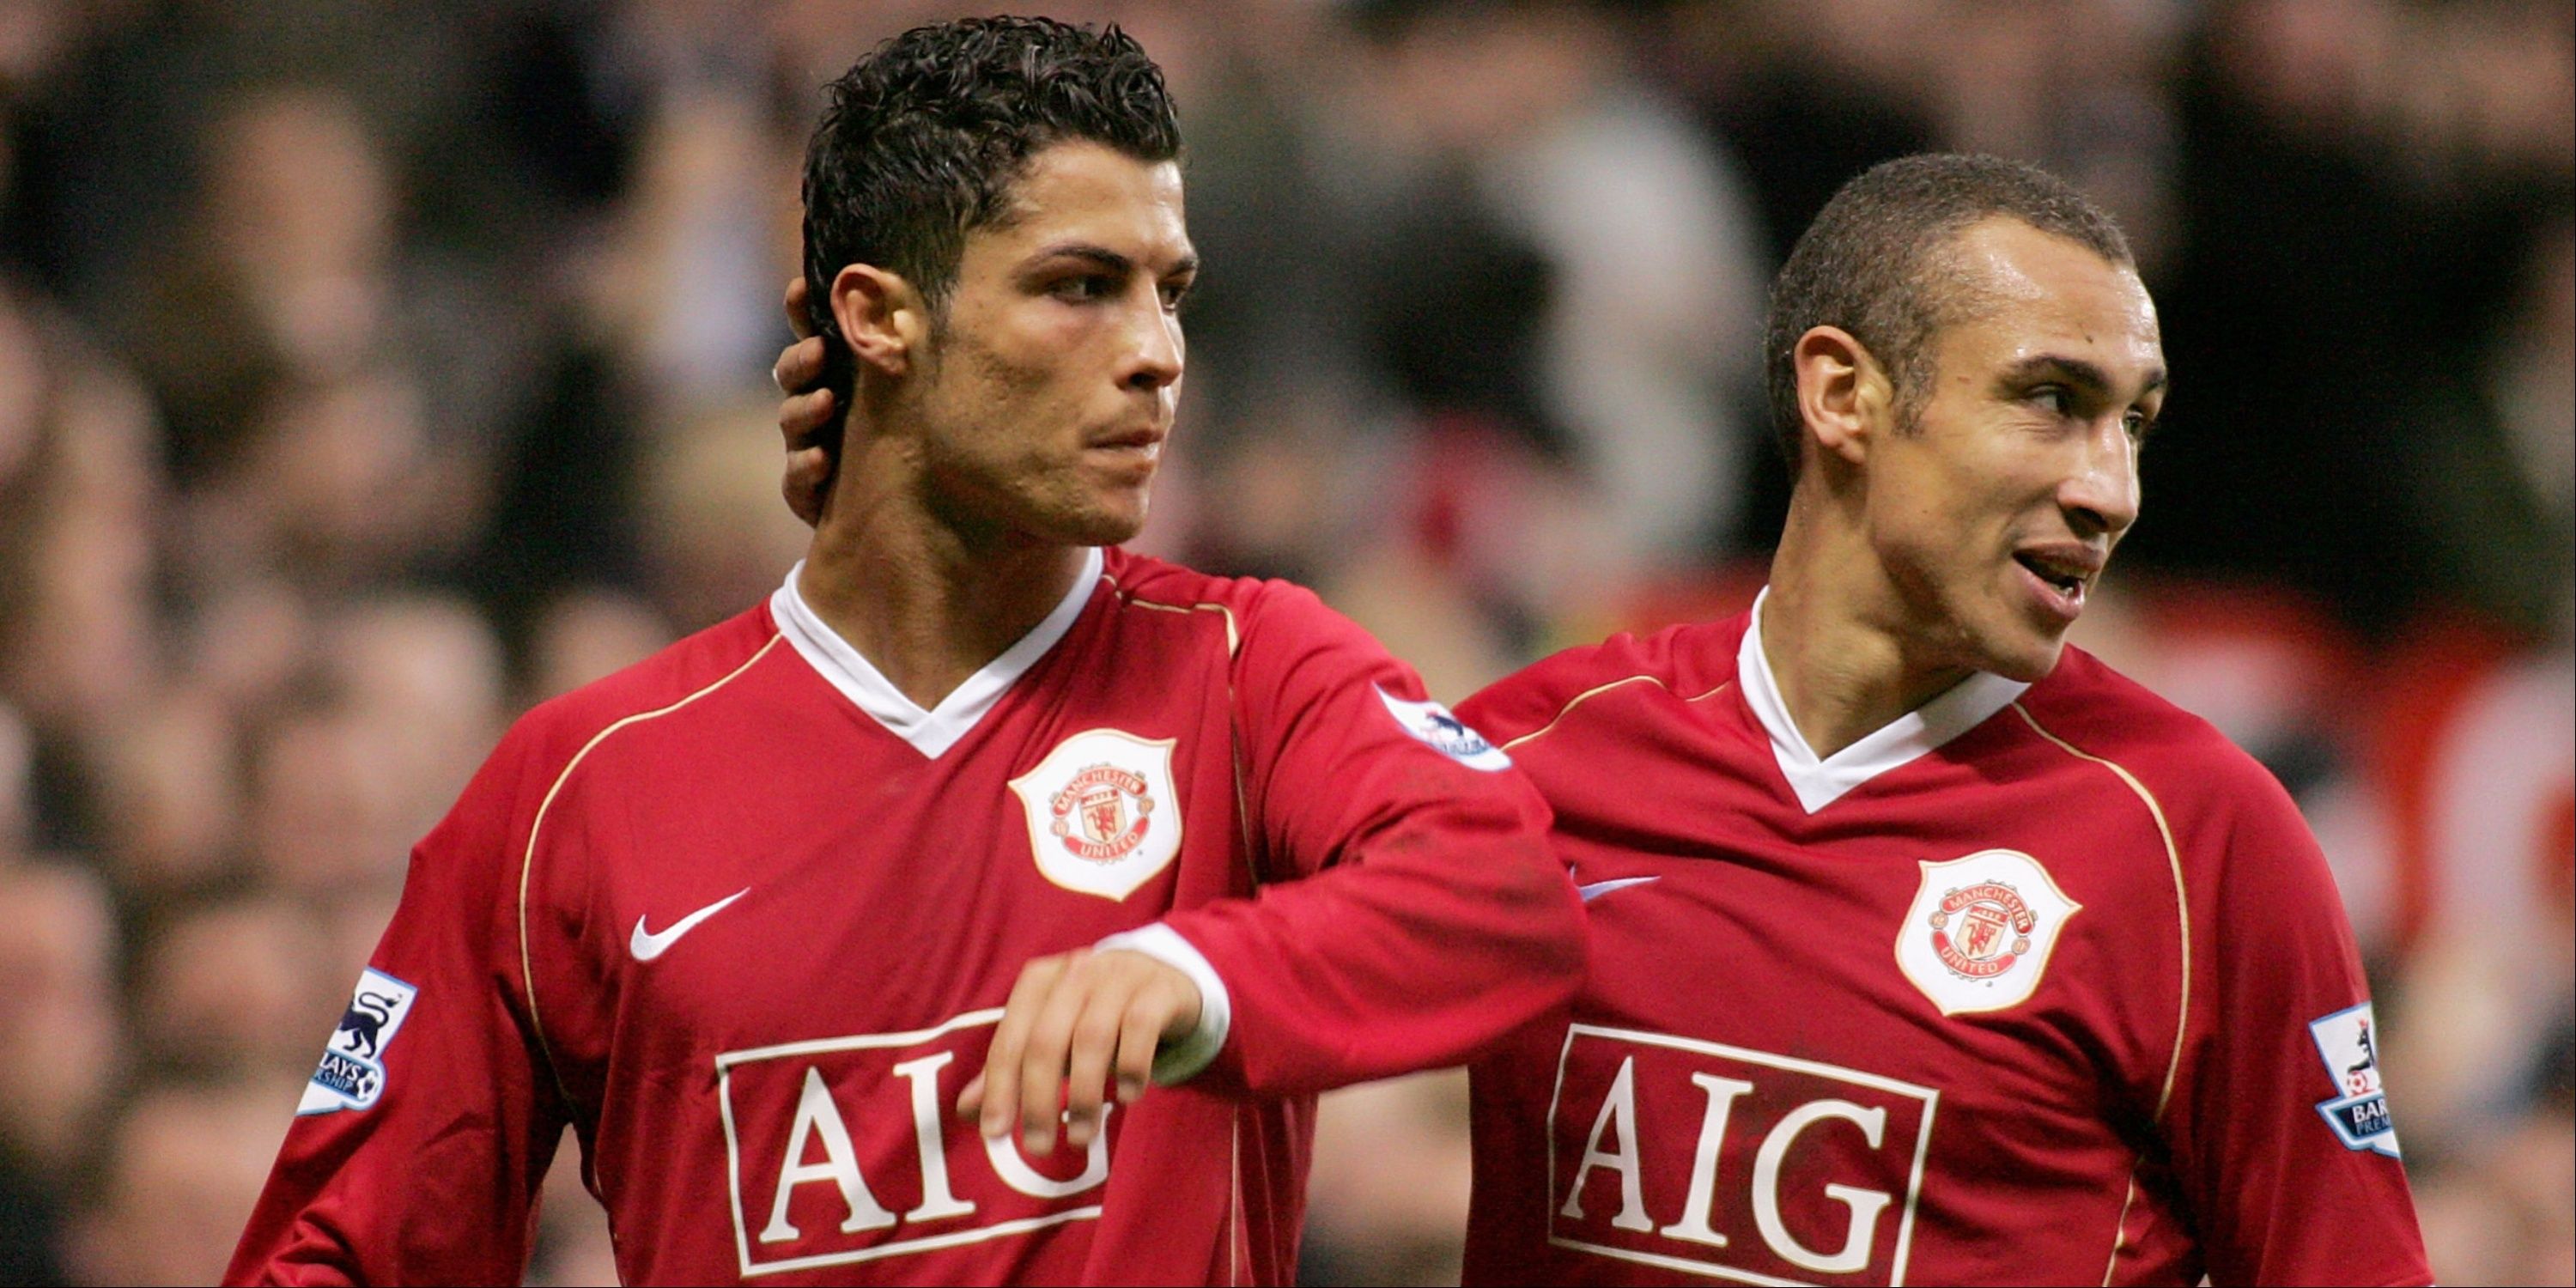 Cristiano Ronaldo of Manchester United celebrates with Henrik Larsson